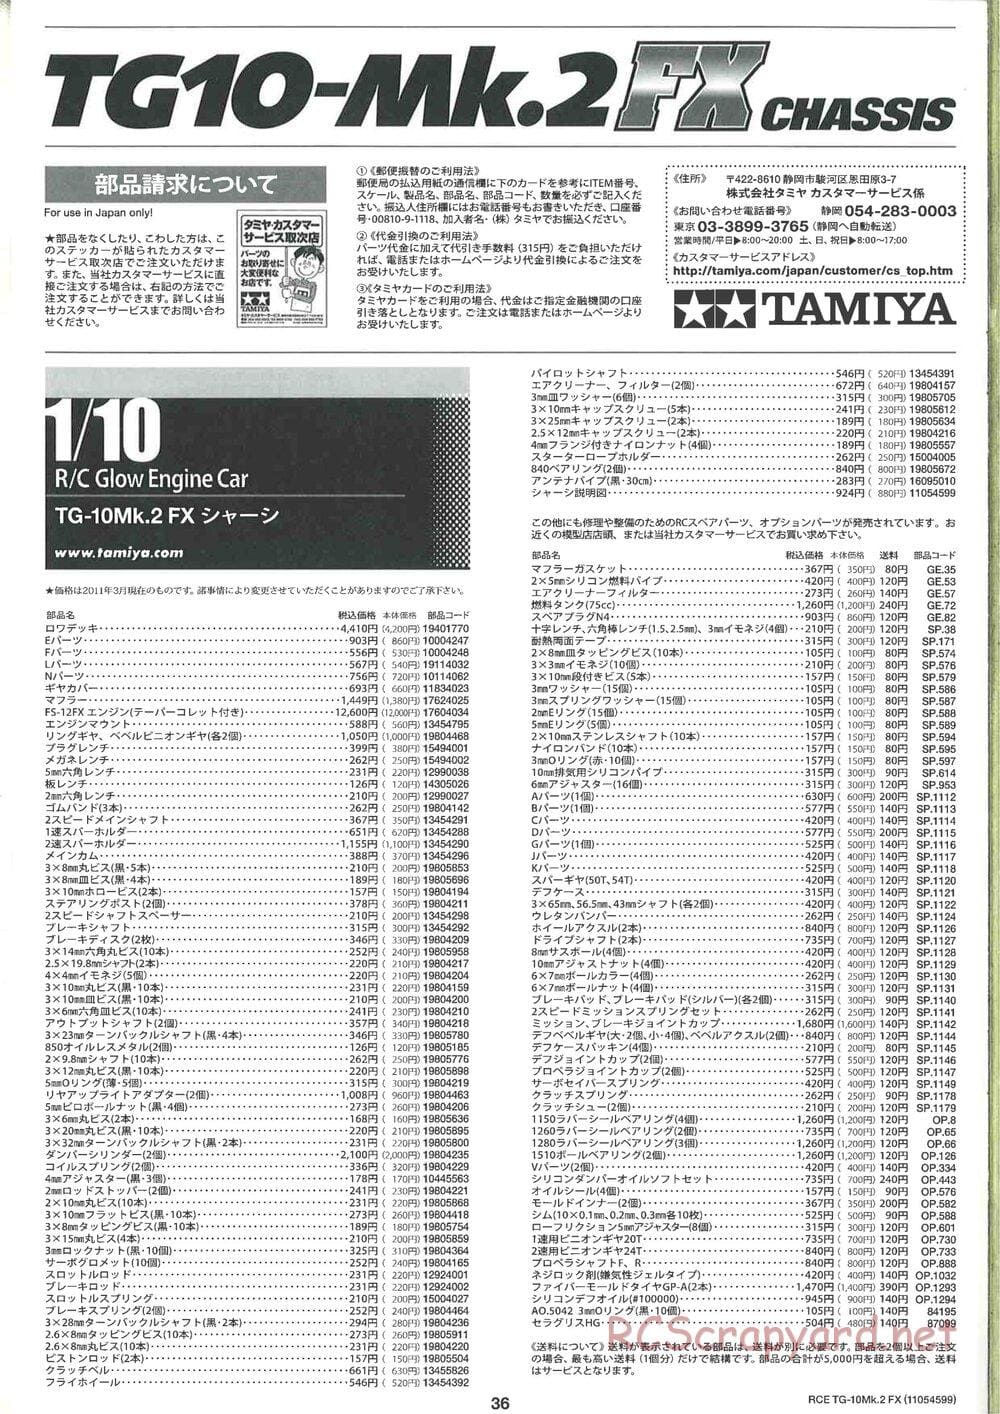 Tamiya - TG10 Mk.2 FX Chassis - Manual - Page 36